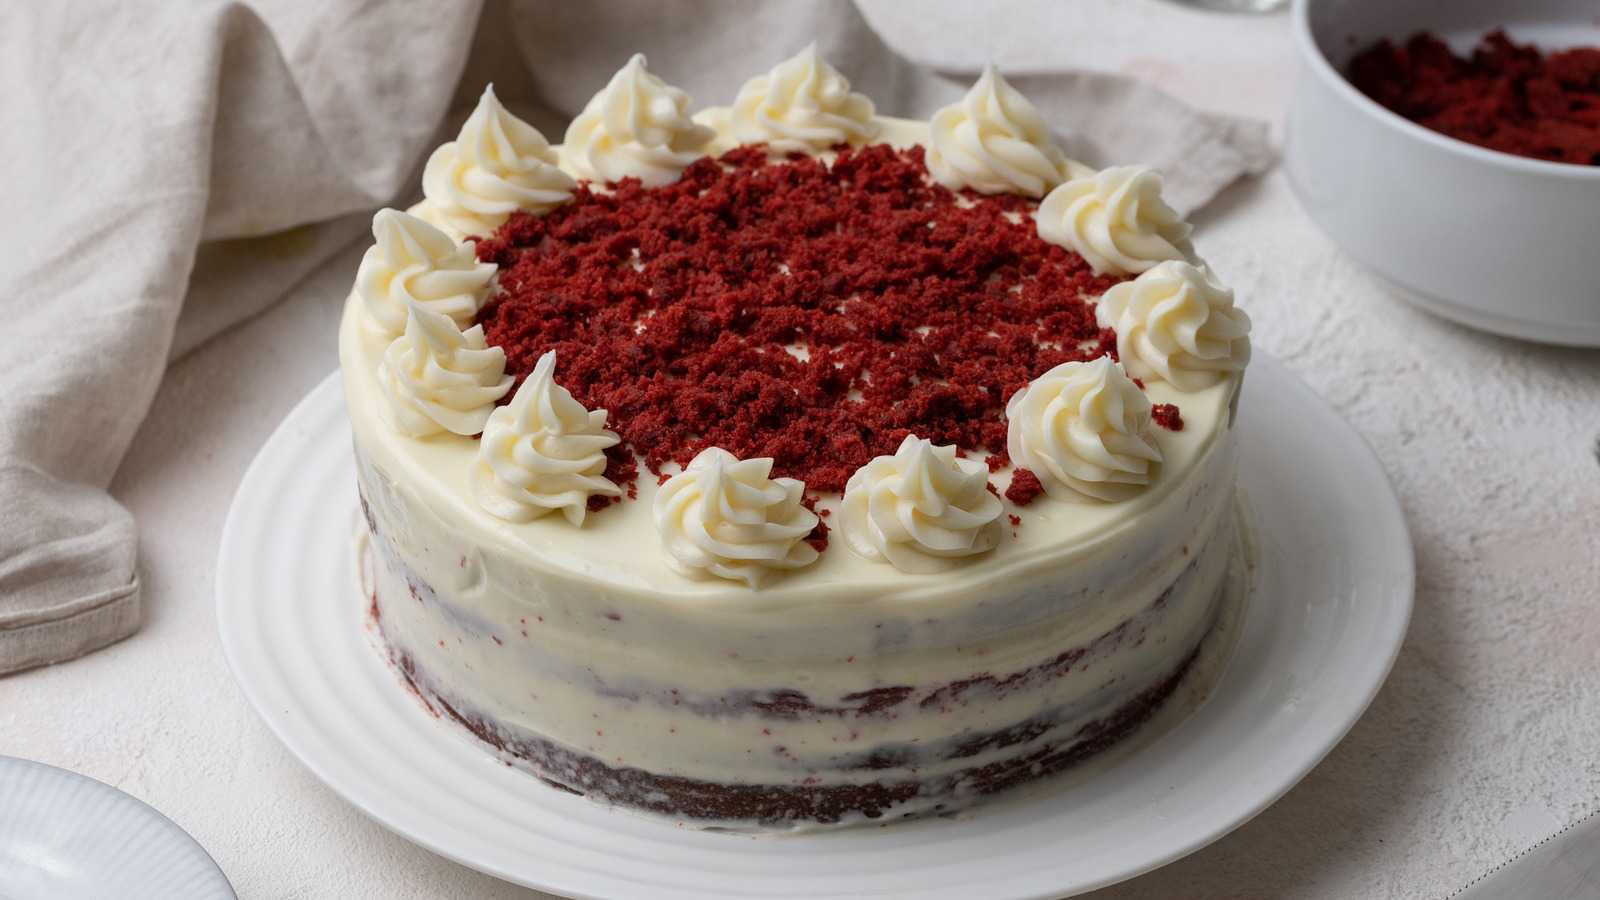 Moist Red Velvet Cake with Cream Cheese Frosting - Veena Azmanov